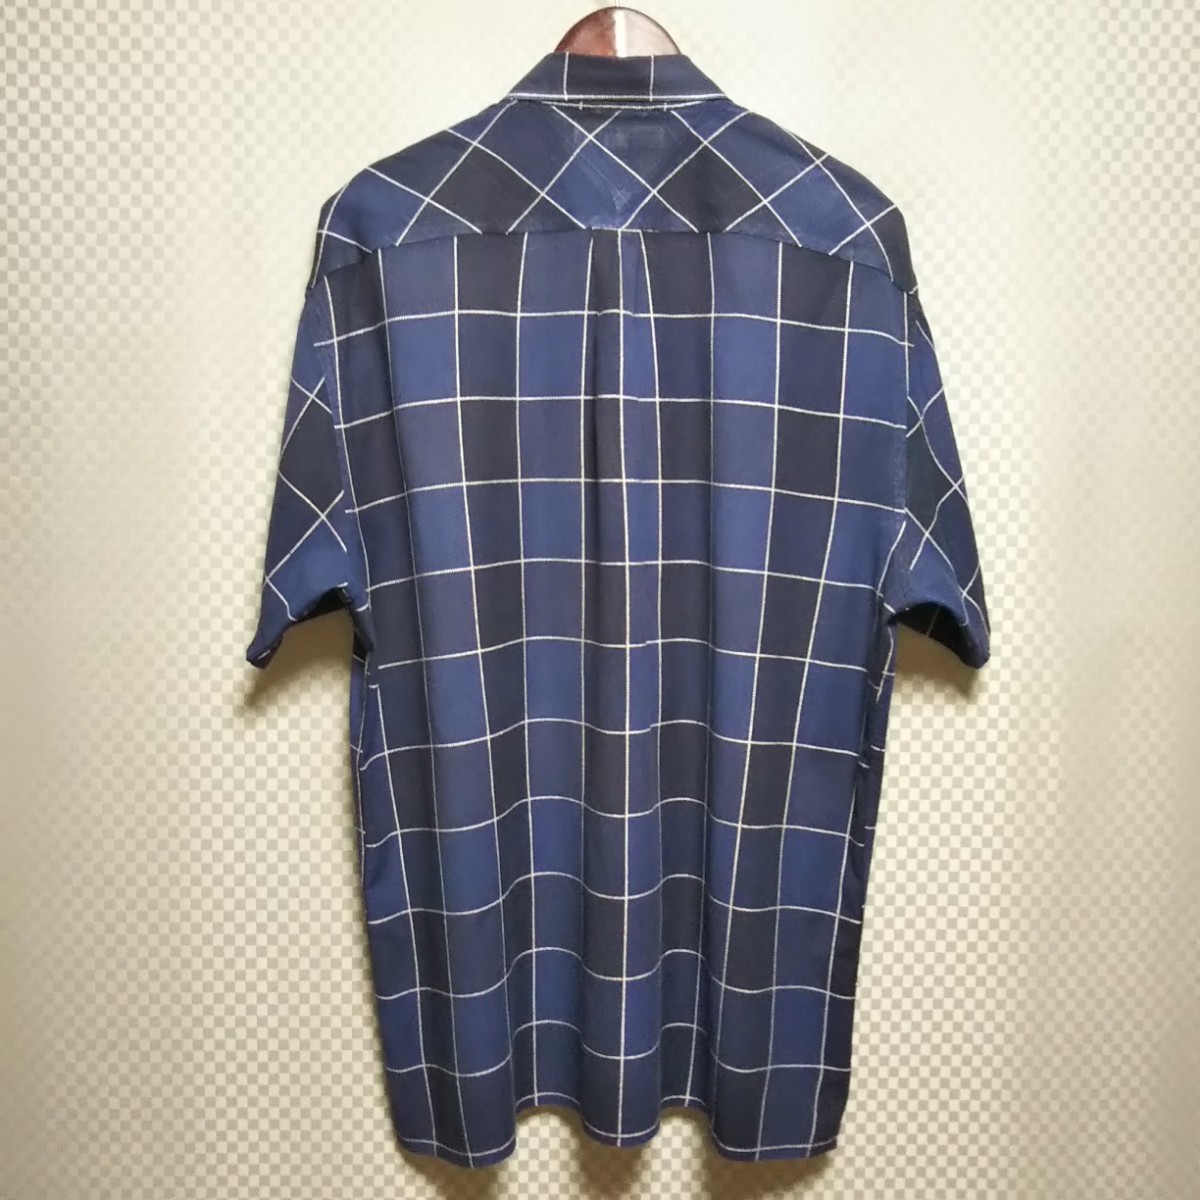 トミーヒルフィガー☆ハーフボタンシャツ 半袖 チェック柄 L マルチカラー